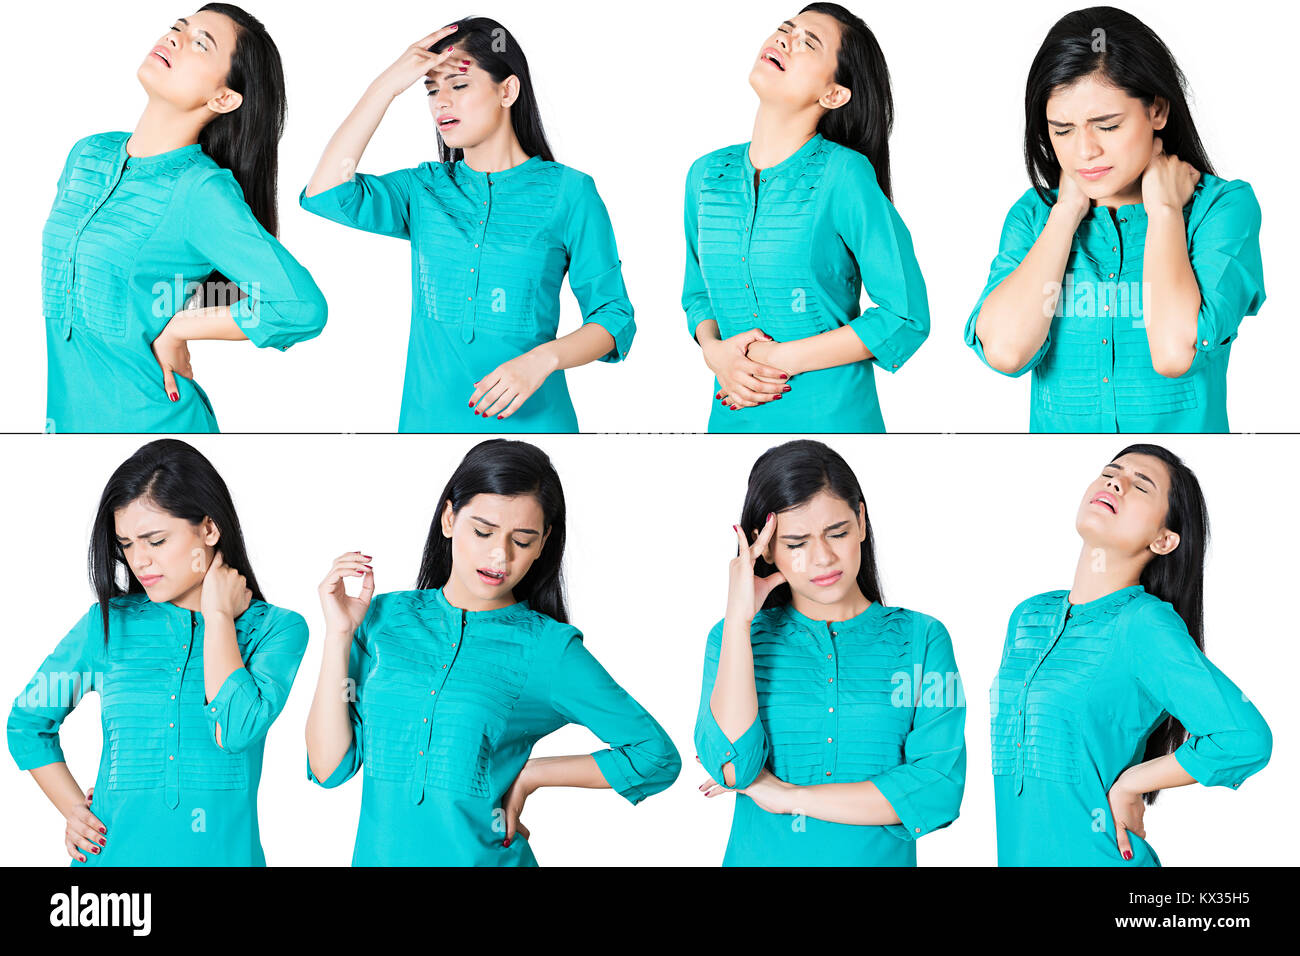 Montage photo femme indienne des douleurs abdominales, maux de dos, maux de tête, problème Banque D'Images